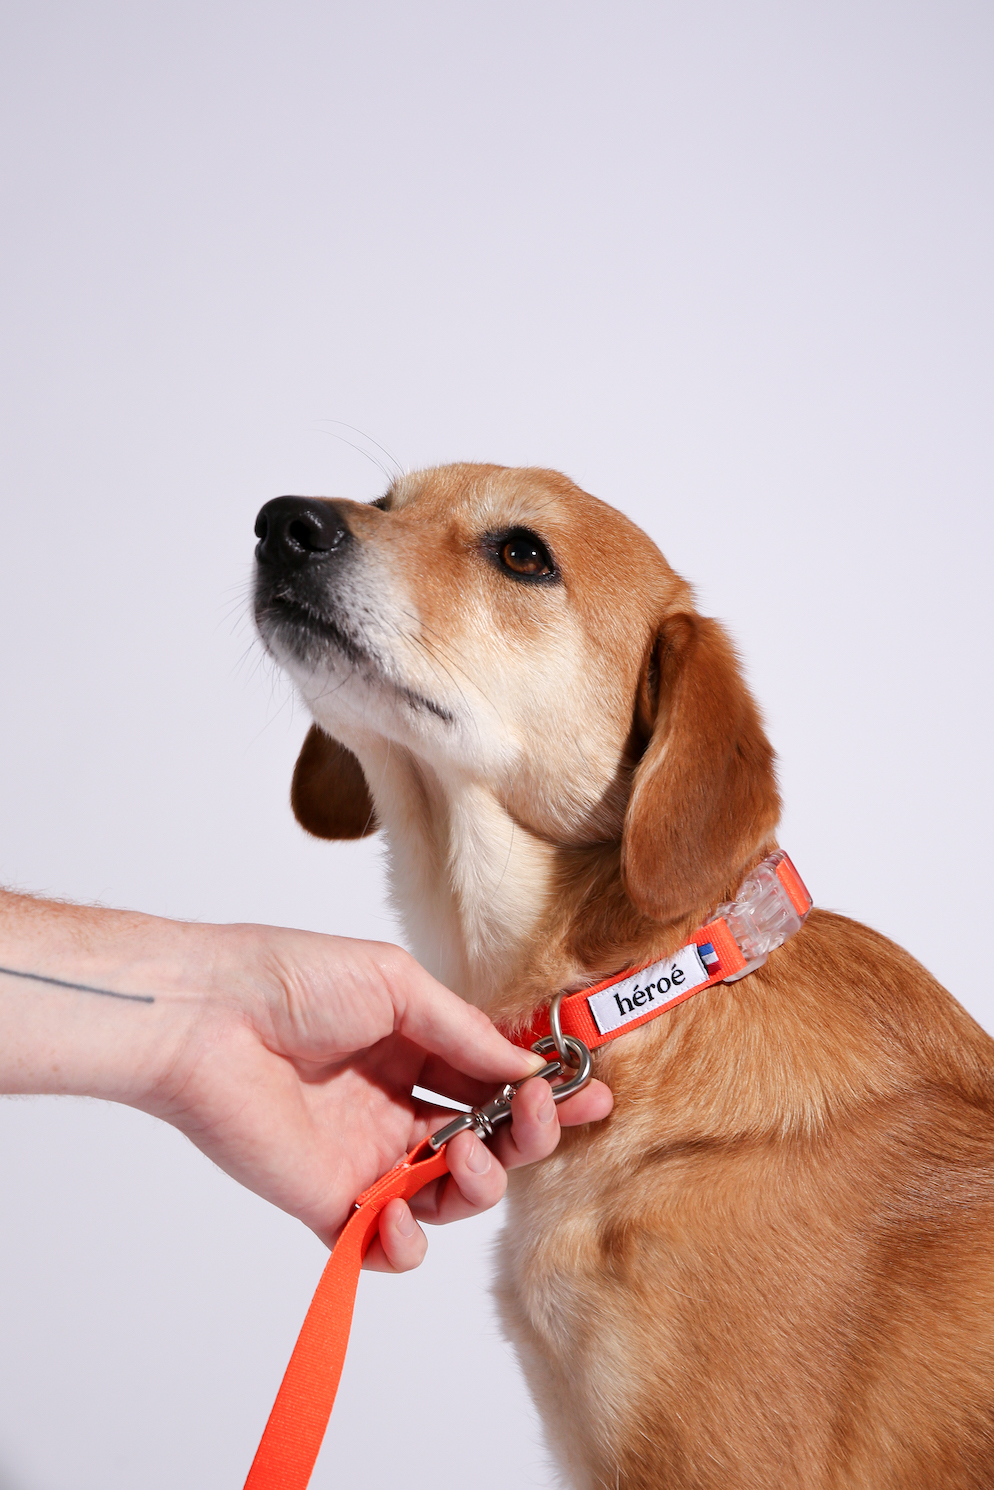 héroé, accessoires recyclés pour chiens stylés 🐕 ♻️ 🇫🇷 🧡 - Ulule